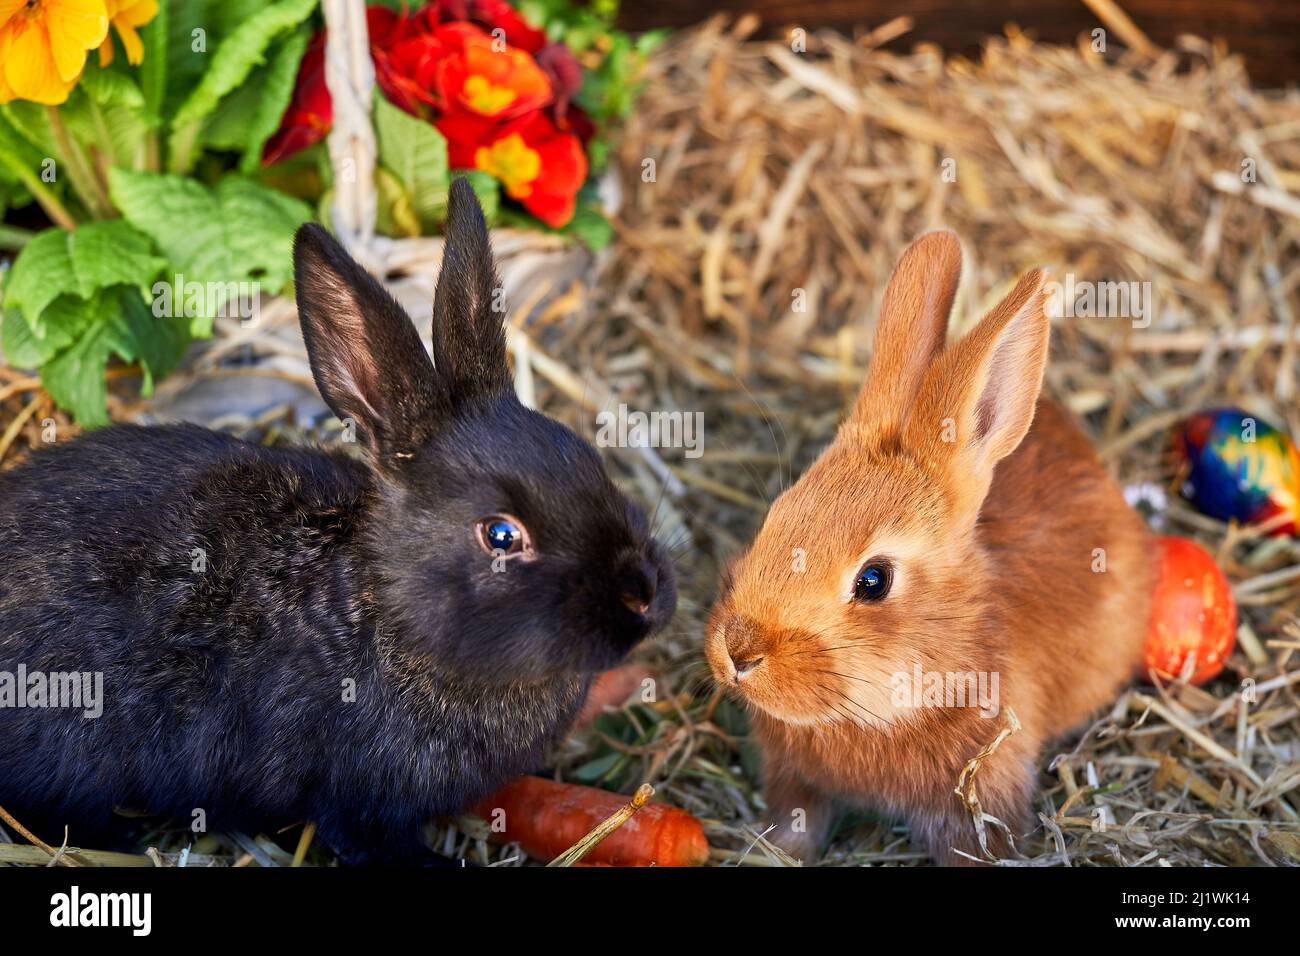 zwei junge Kaninchen auf Stroh mit Frühlingsblumen Ostereiern und Karotten Foto de stock